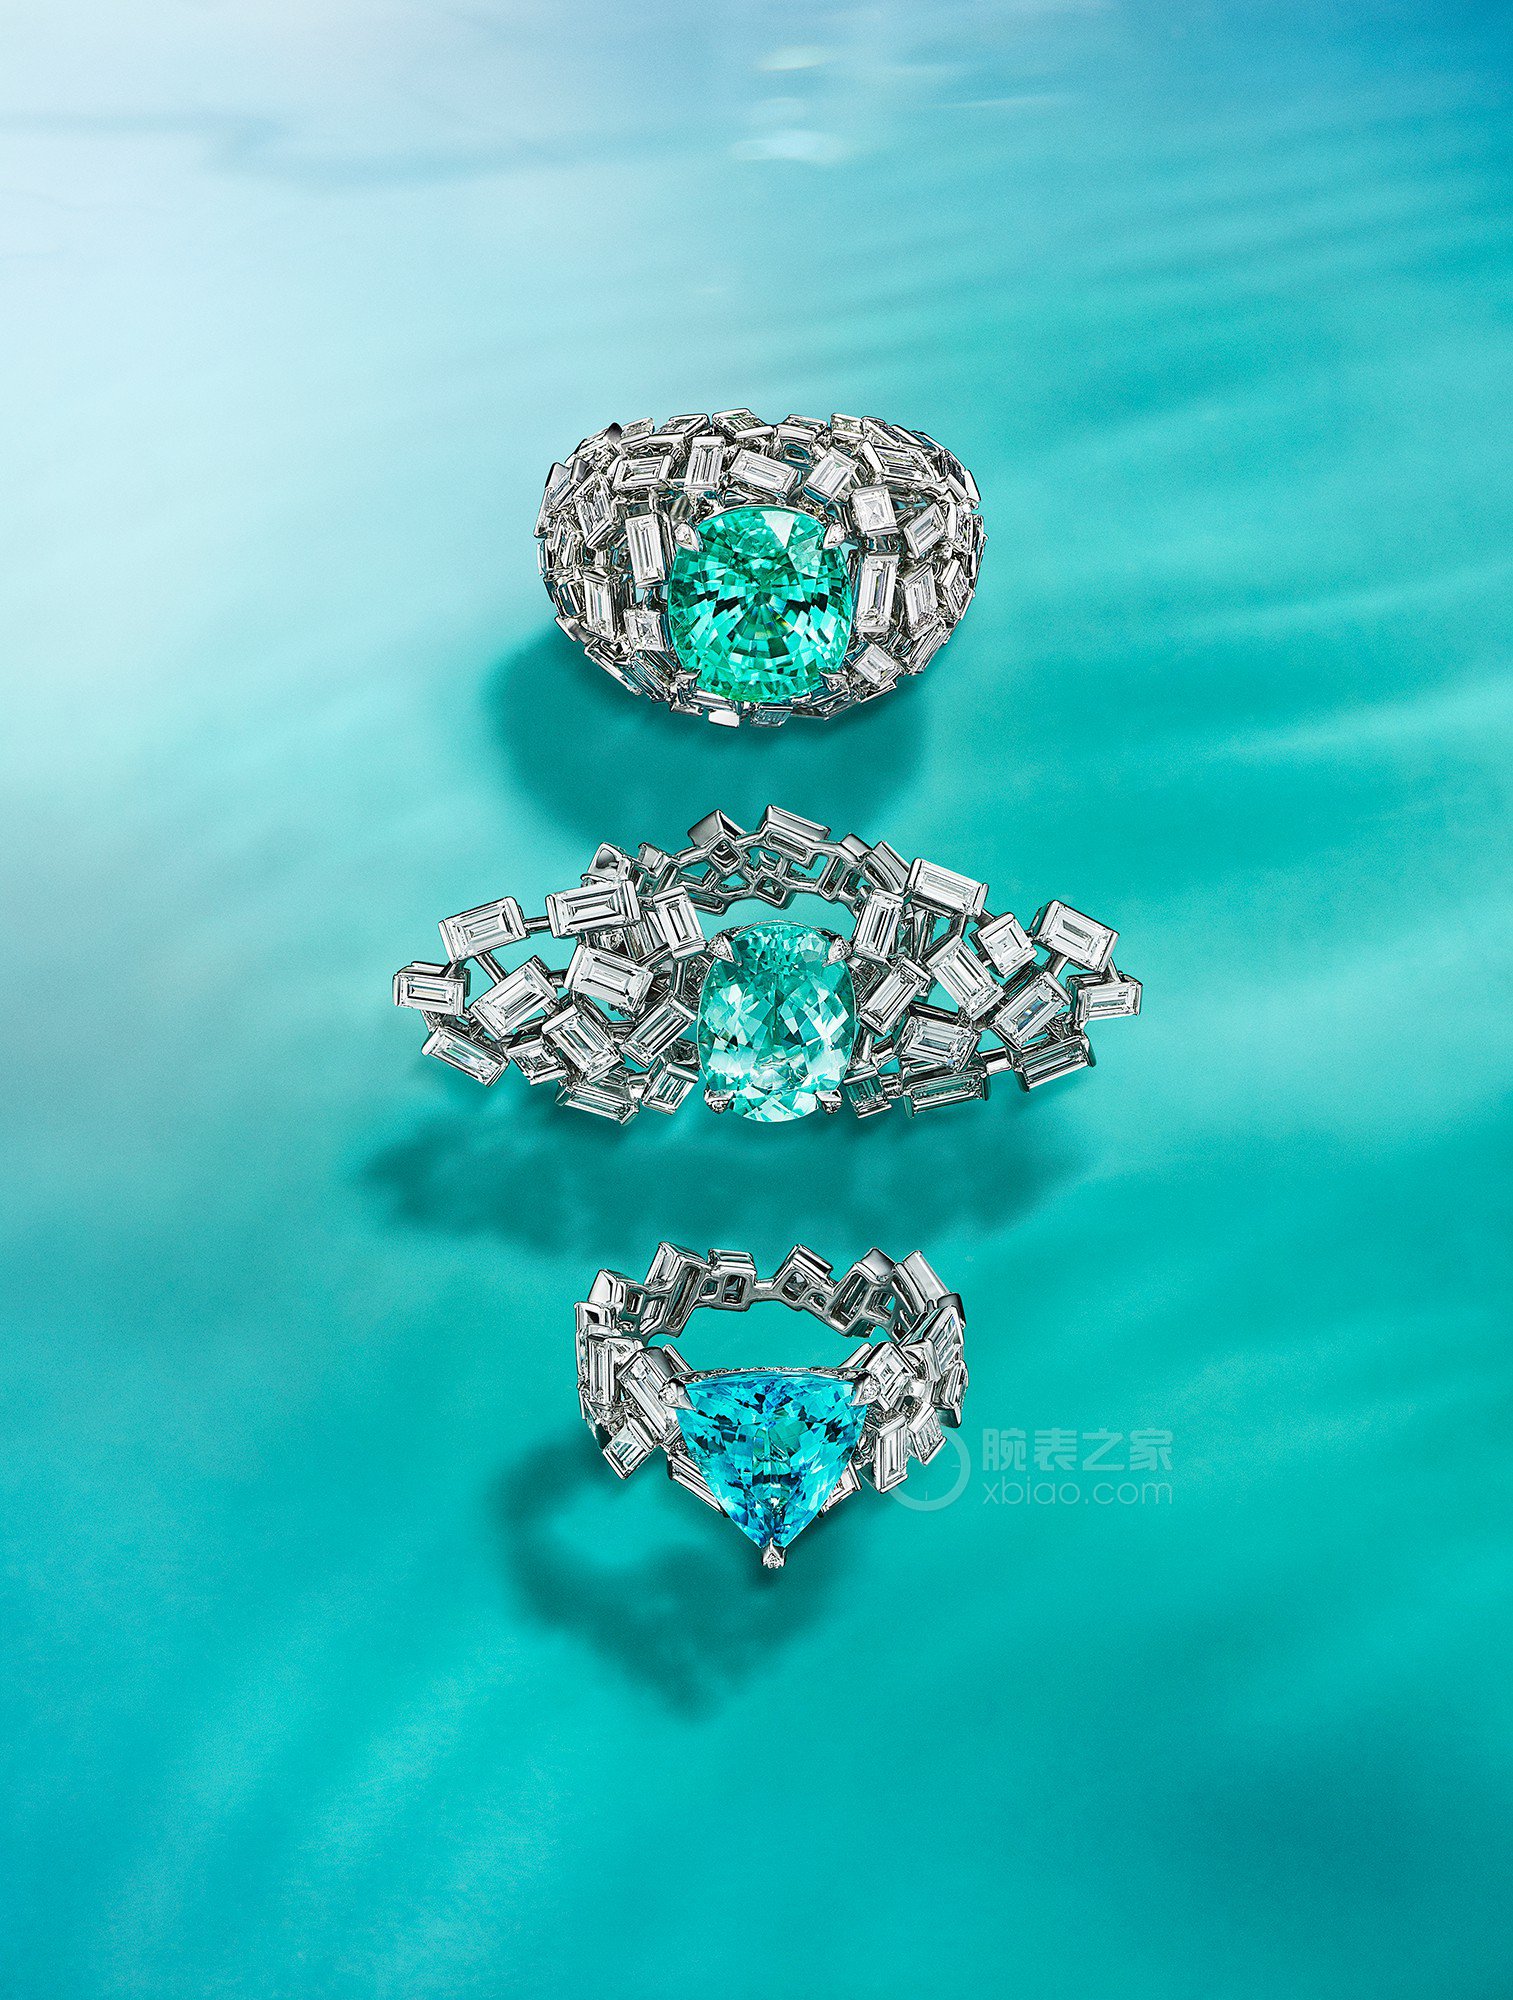 蒂芙尼BLUE BOOK高级珠宝18K白金镶嵌一颗重逾2克拉的帕拉依巴碧玺及钻石戒指戒指